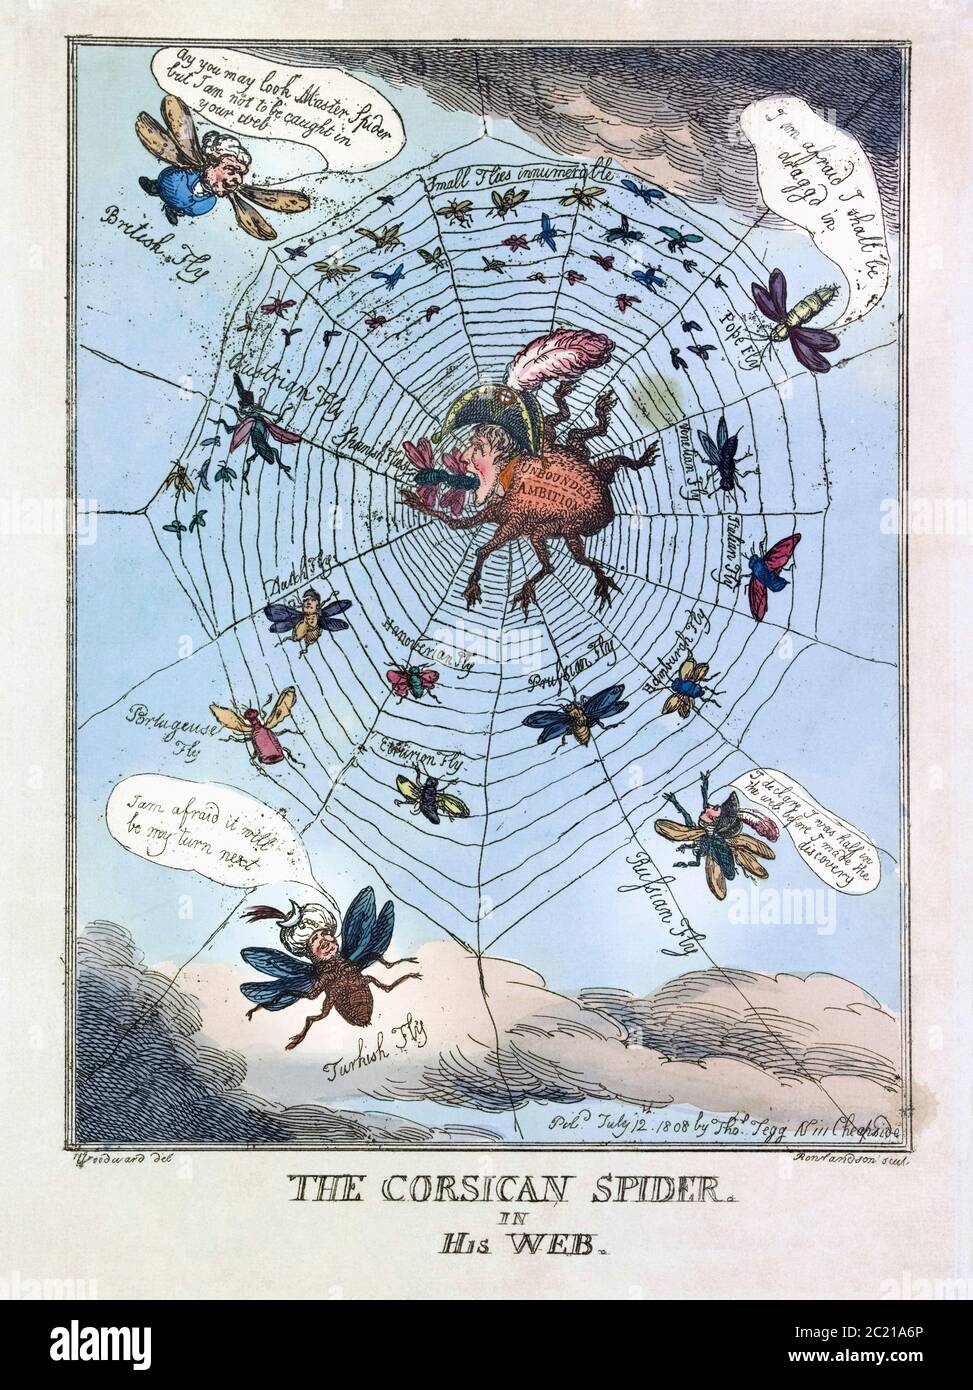 Die korsische Spinne in seinem Netz. Politischer Karikatur vom 12. Juli 1808, der Napoleon als Spinne zeigt, die europäische Länder verschlingt, die in seinem Netz gefangen sind. Aus einer Radierung von Thomas Rowlandson nach einer Arbeit von George Moutard Woodward. Stockfoto